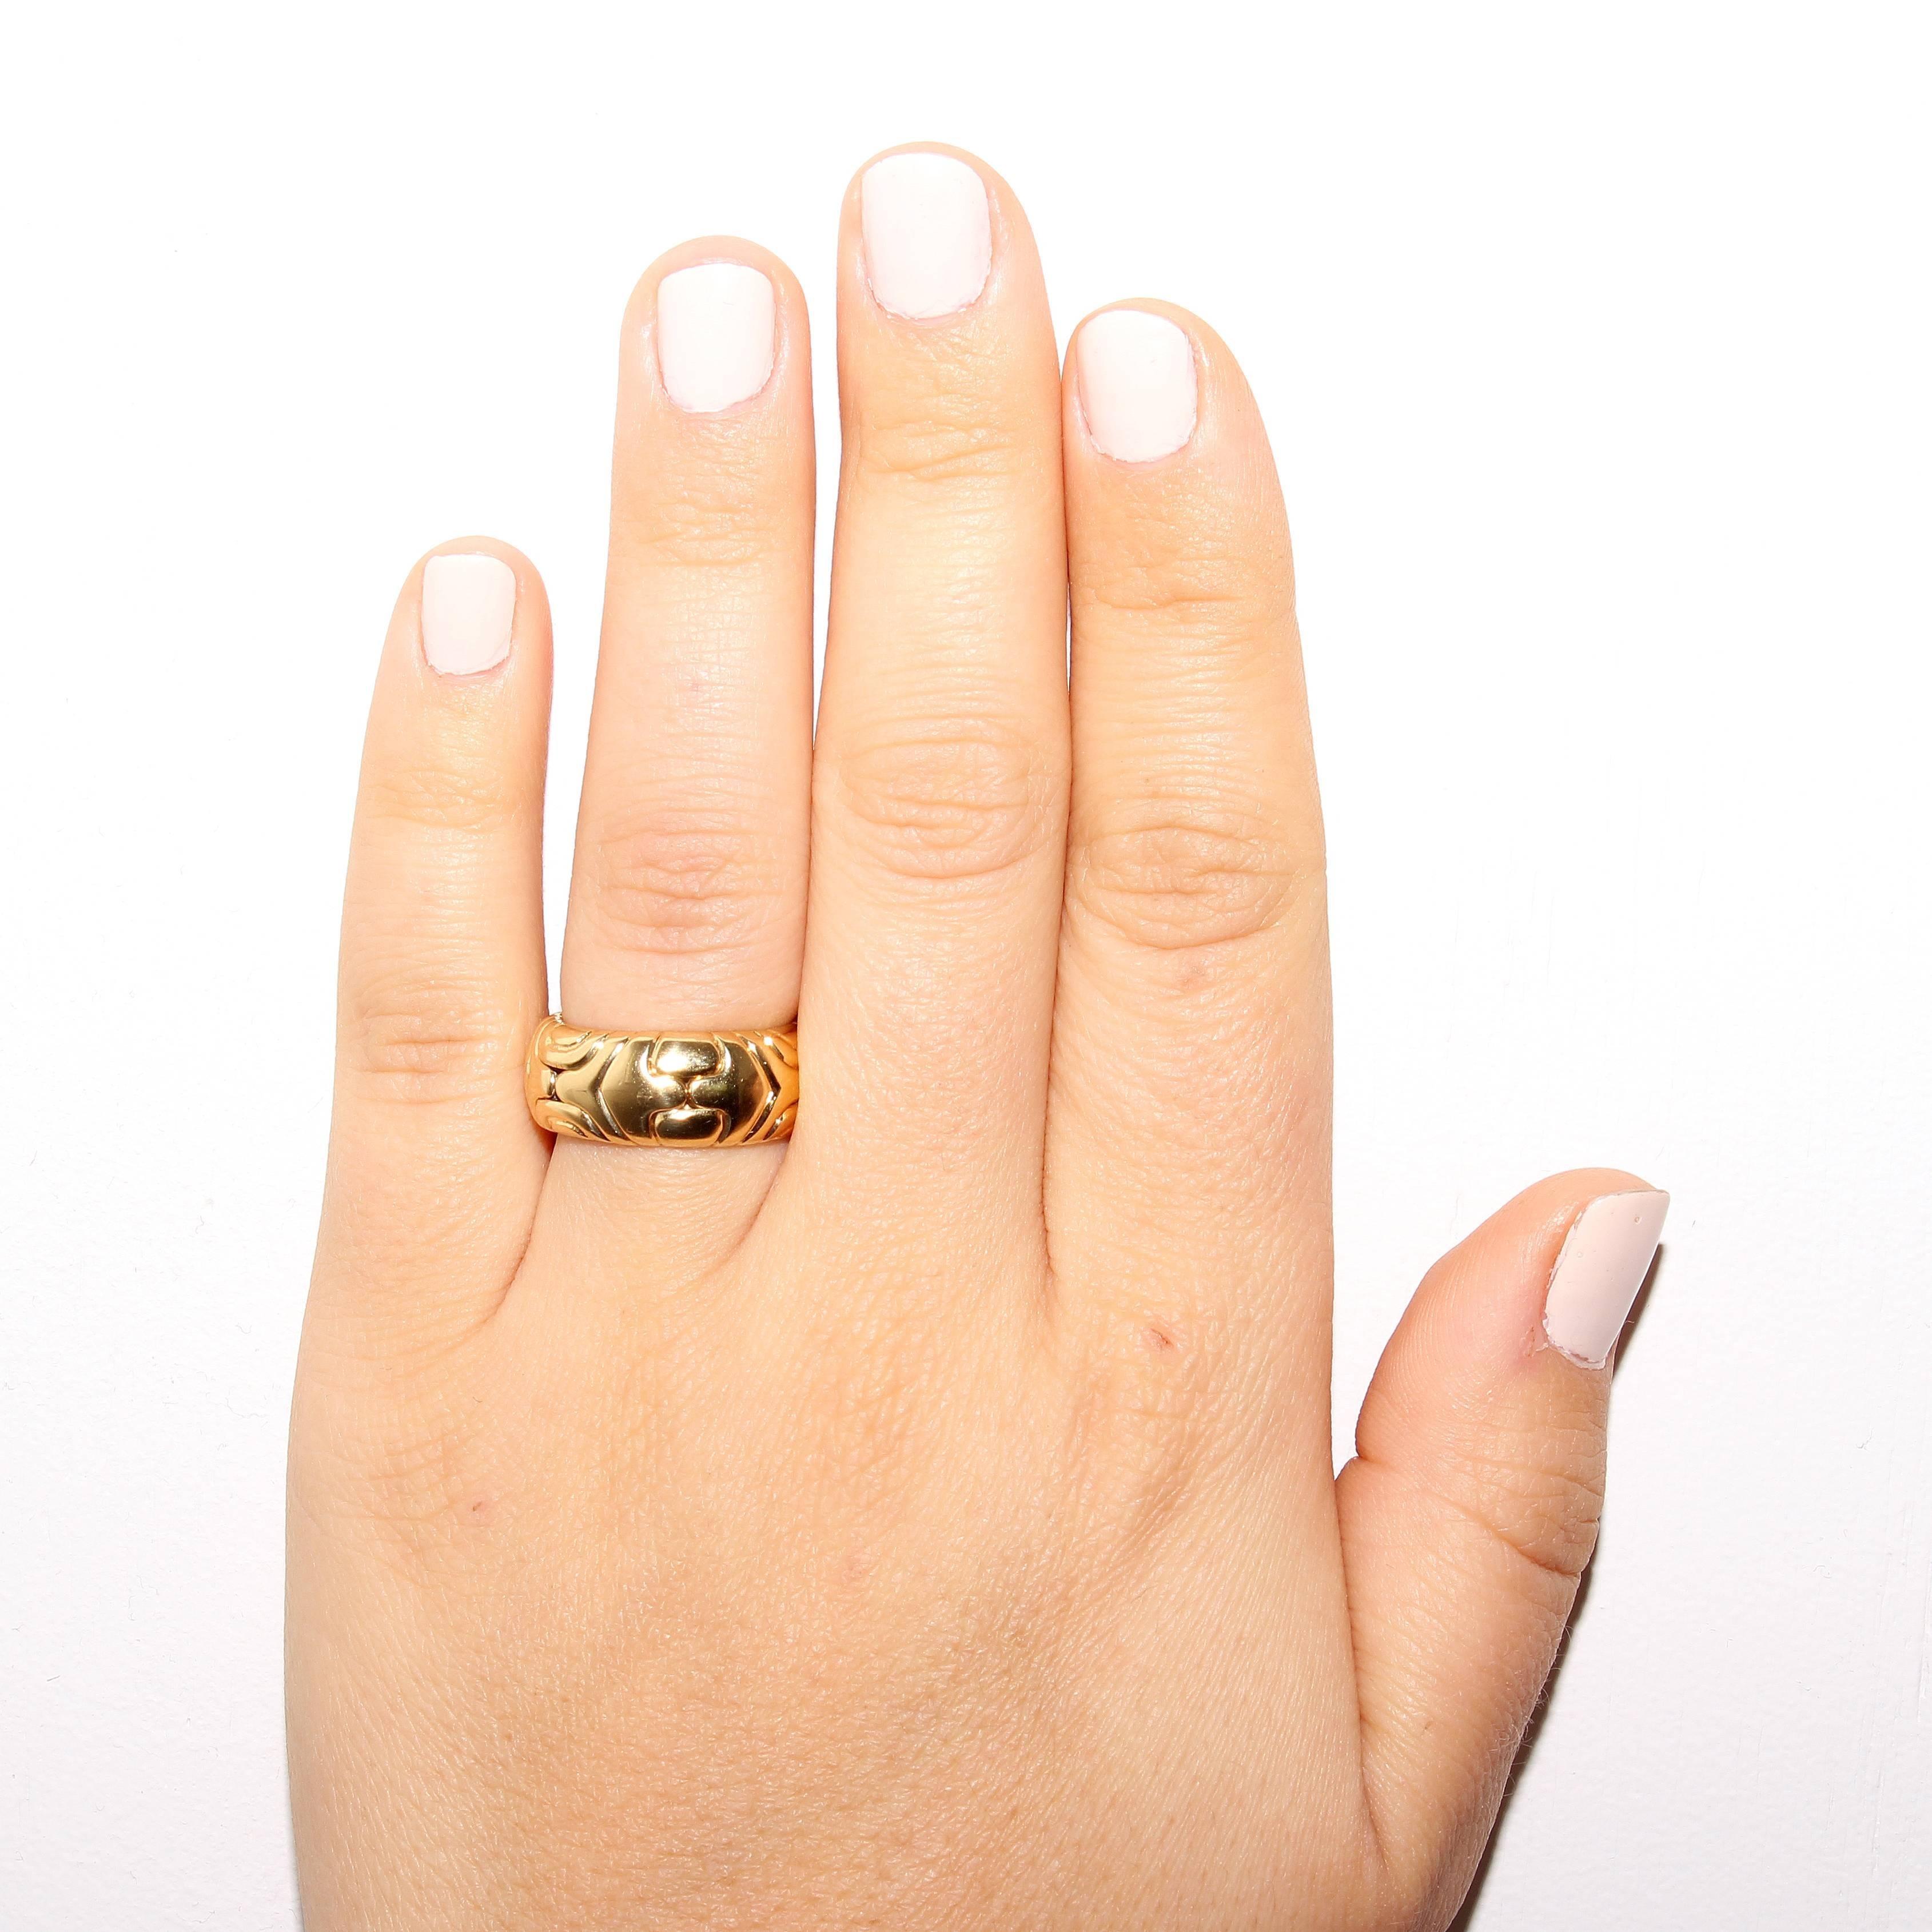 Stylish, golden ring from Bulgari. Designed in 18k gold. Signed Bvlgari. Ring size 5-3/4.
